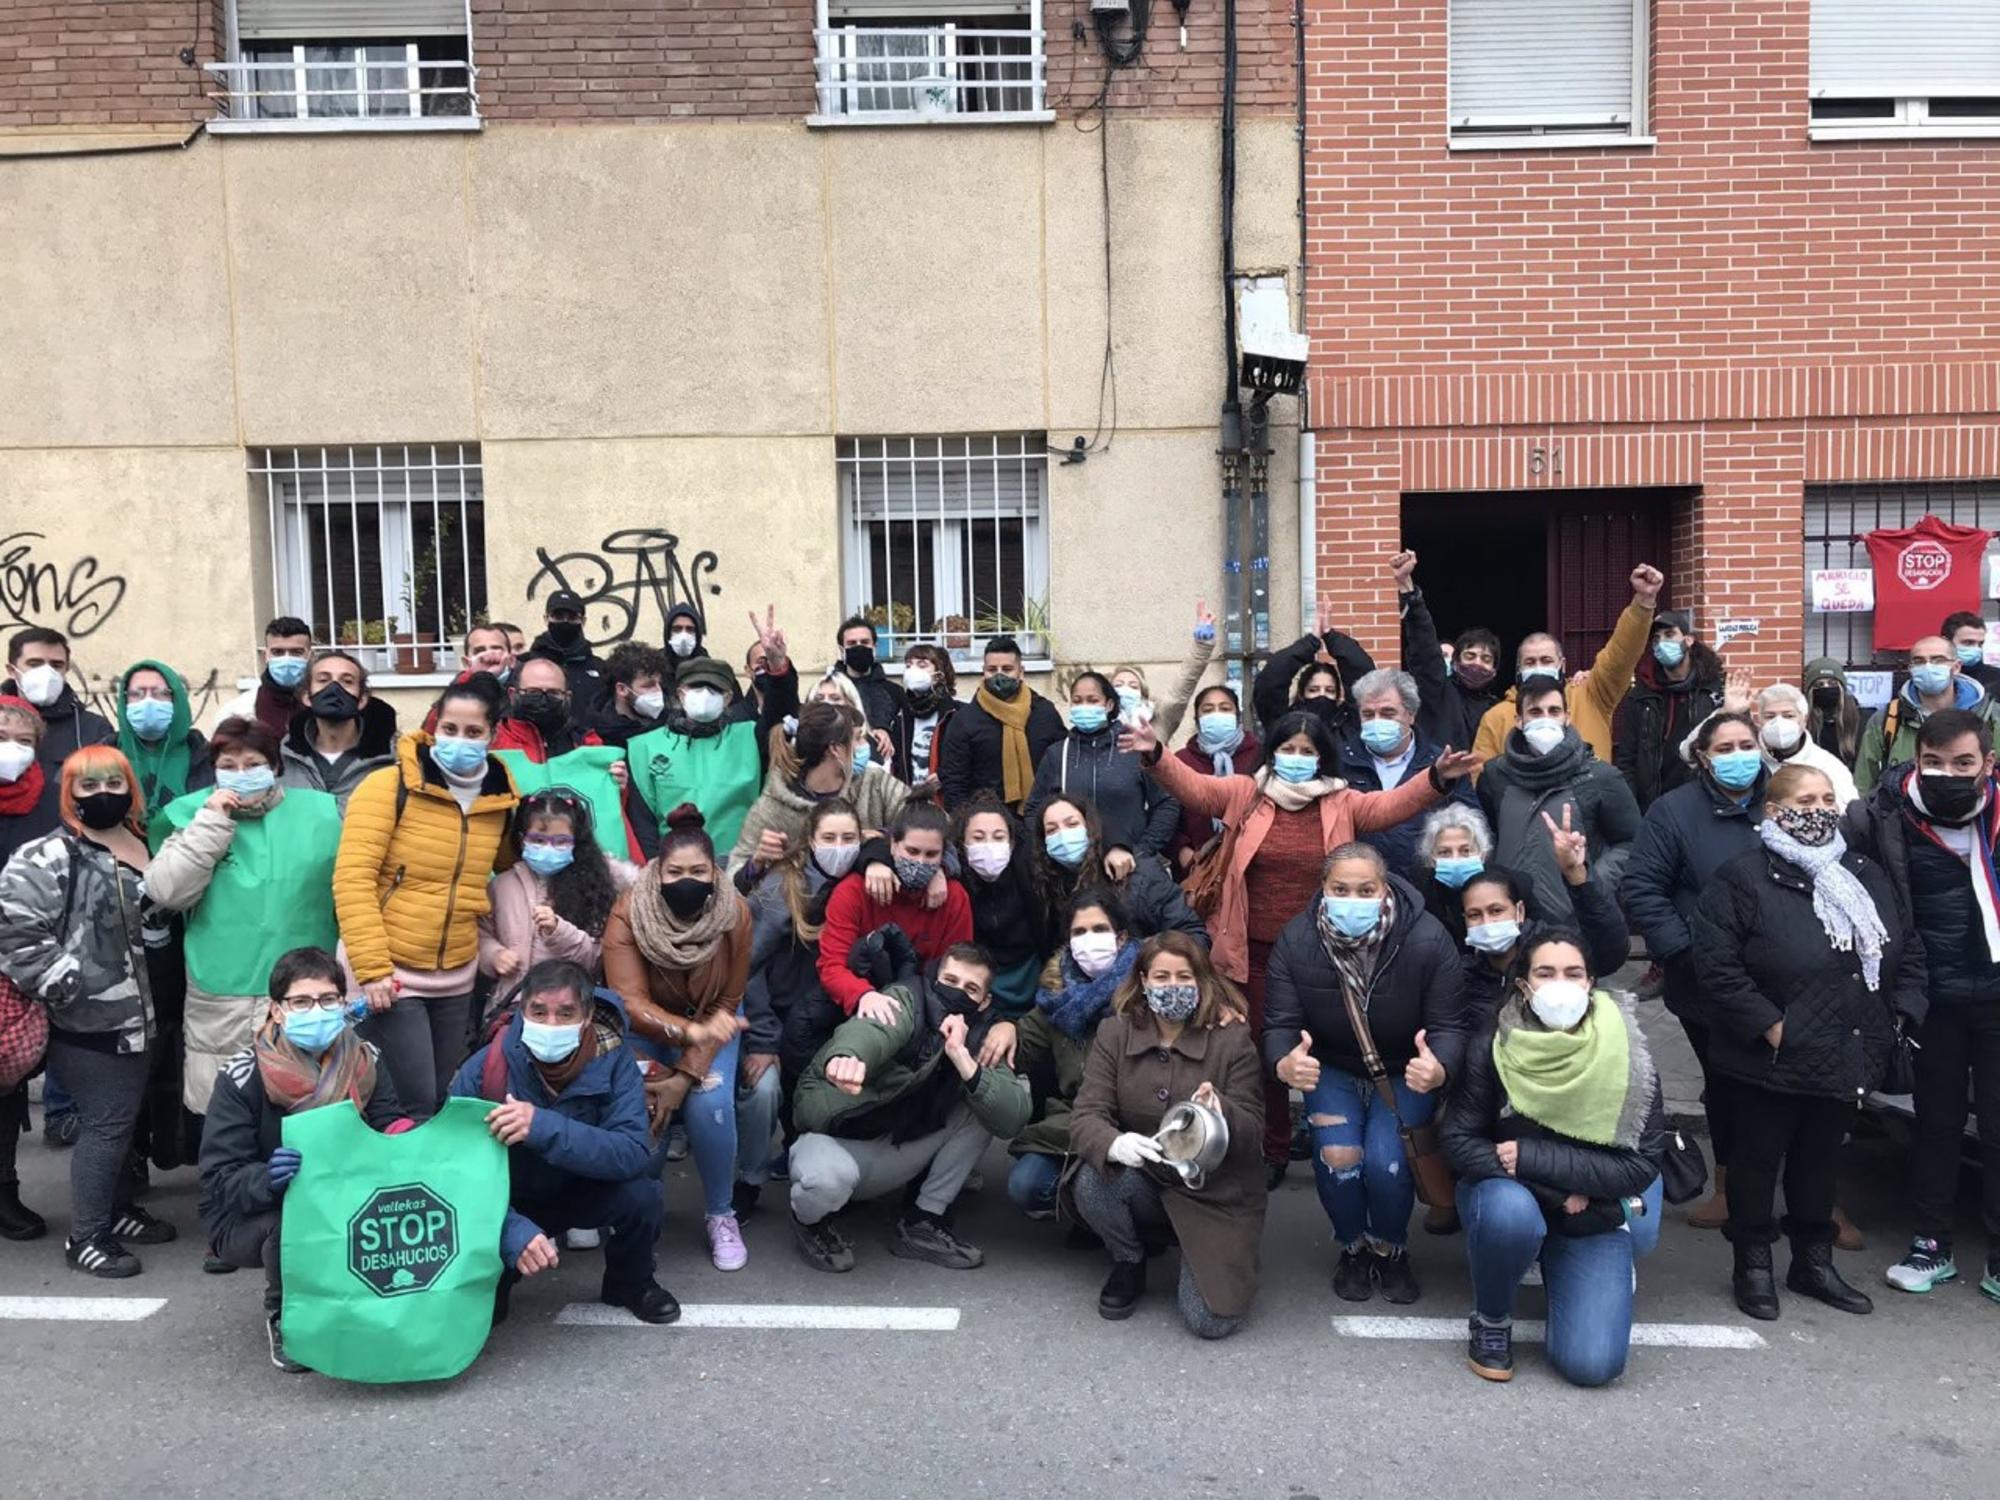 Militantes del movimiento por la vivienda parando un desahucio en el bloque Clara Campoamor. / Sindicato de Vivienda de Carabanchel